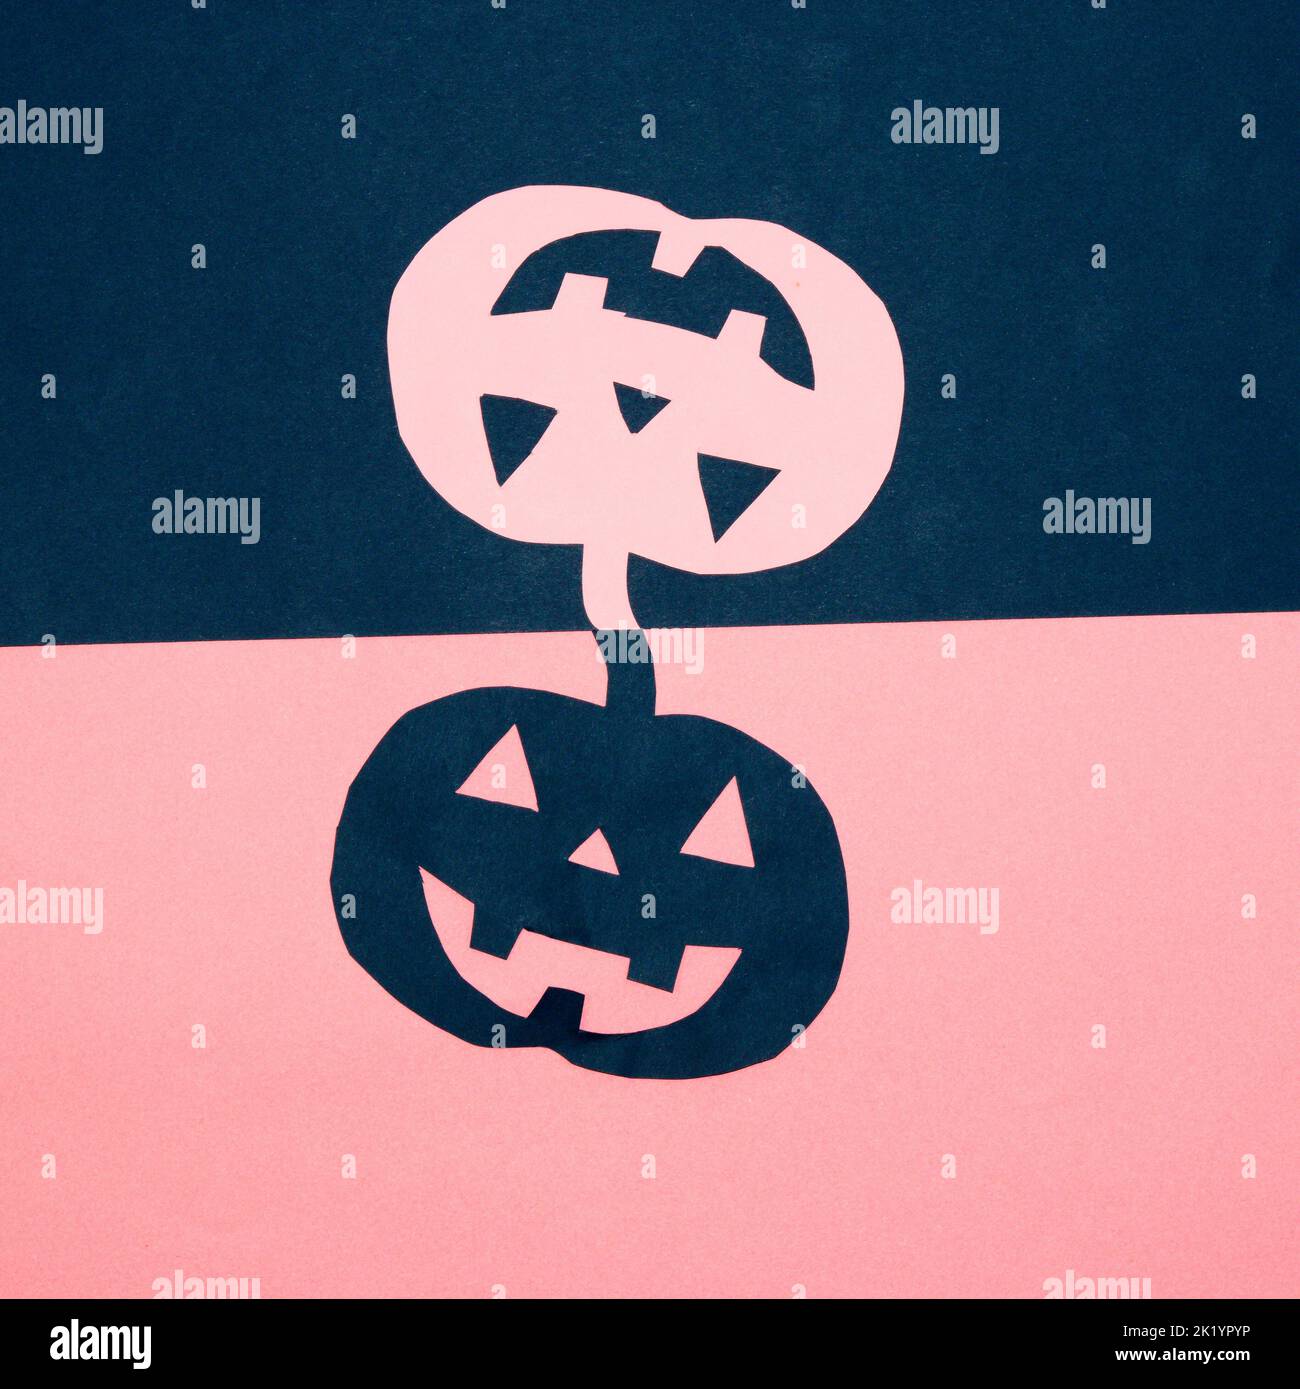 sfondo blu e rosa con zucca di carta blu e rosa, design creativo, concetto di halloween minimal, posa piatta Foto Stock